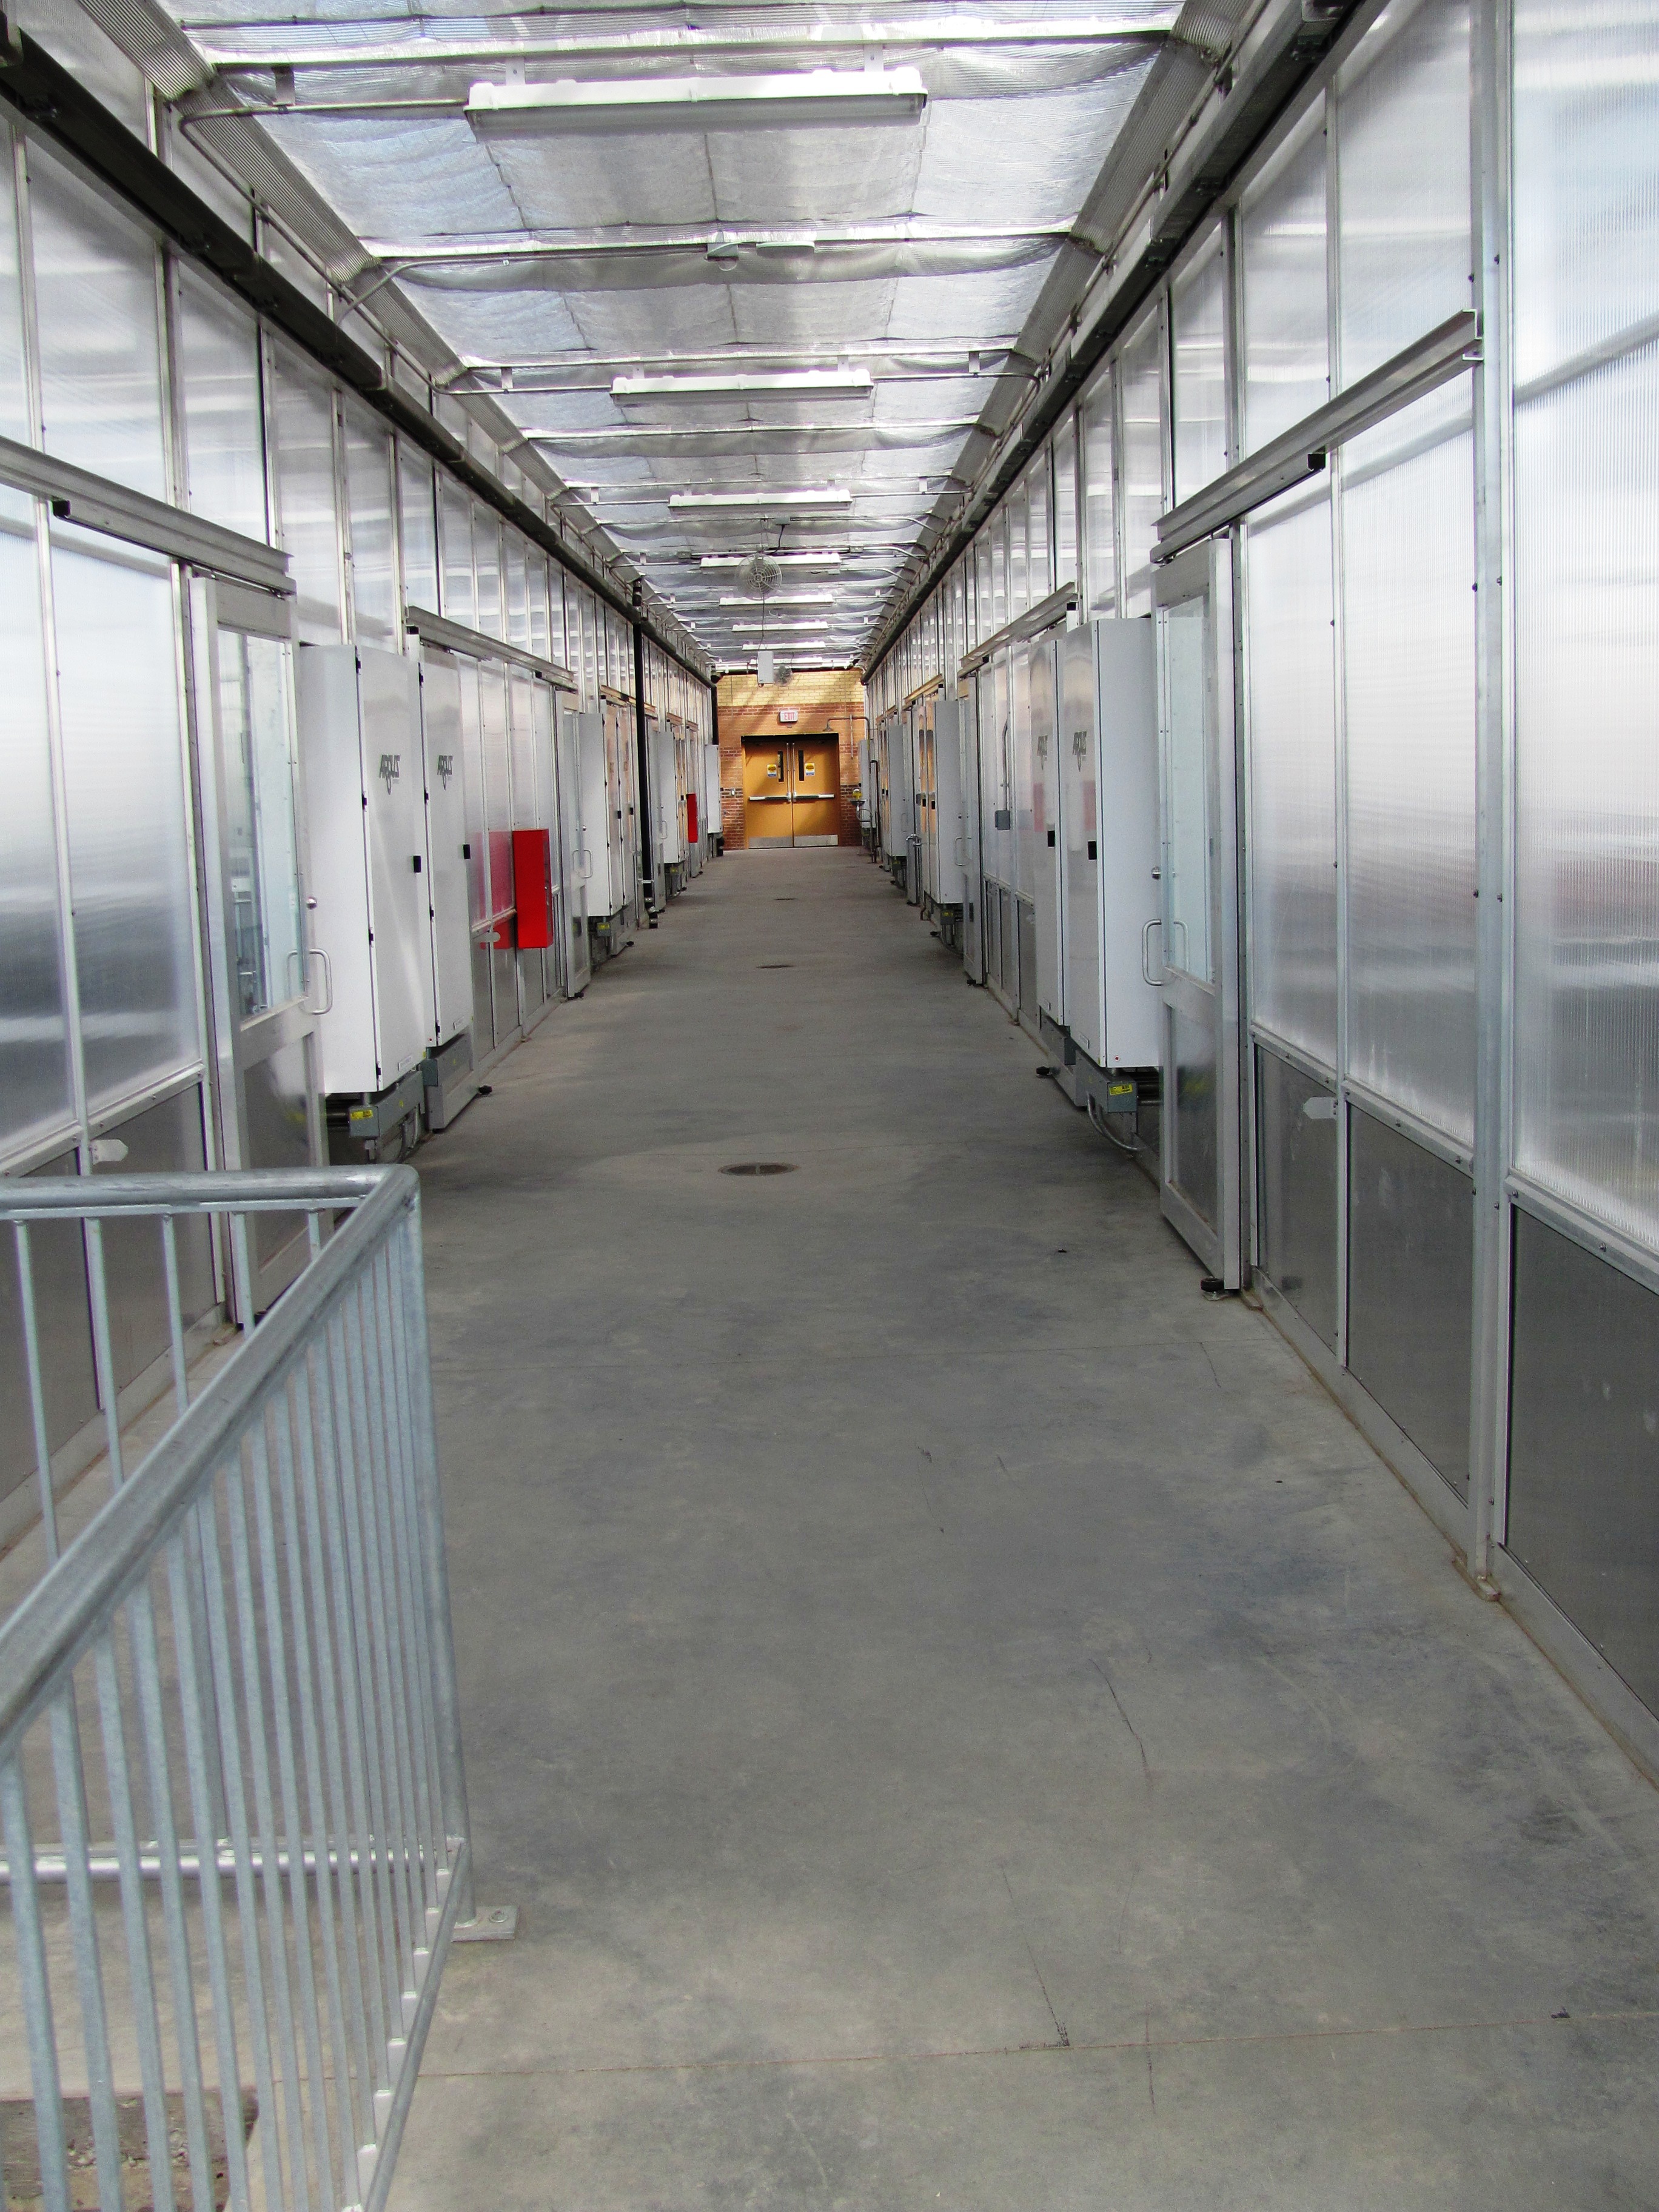 Greenhouse Corridor